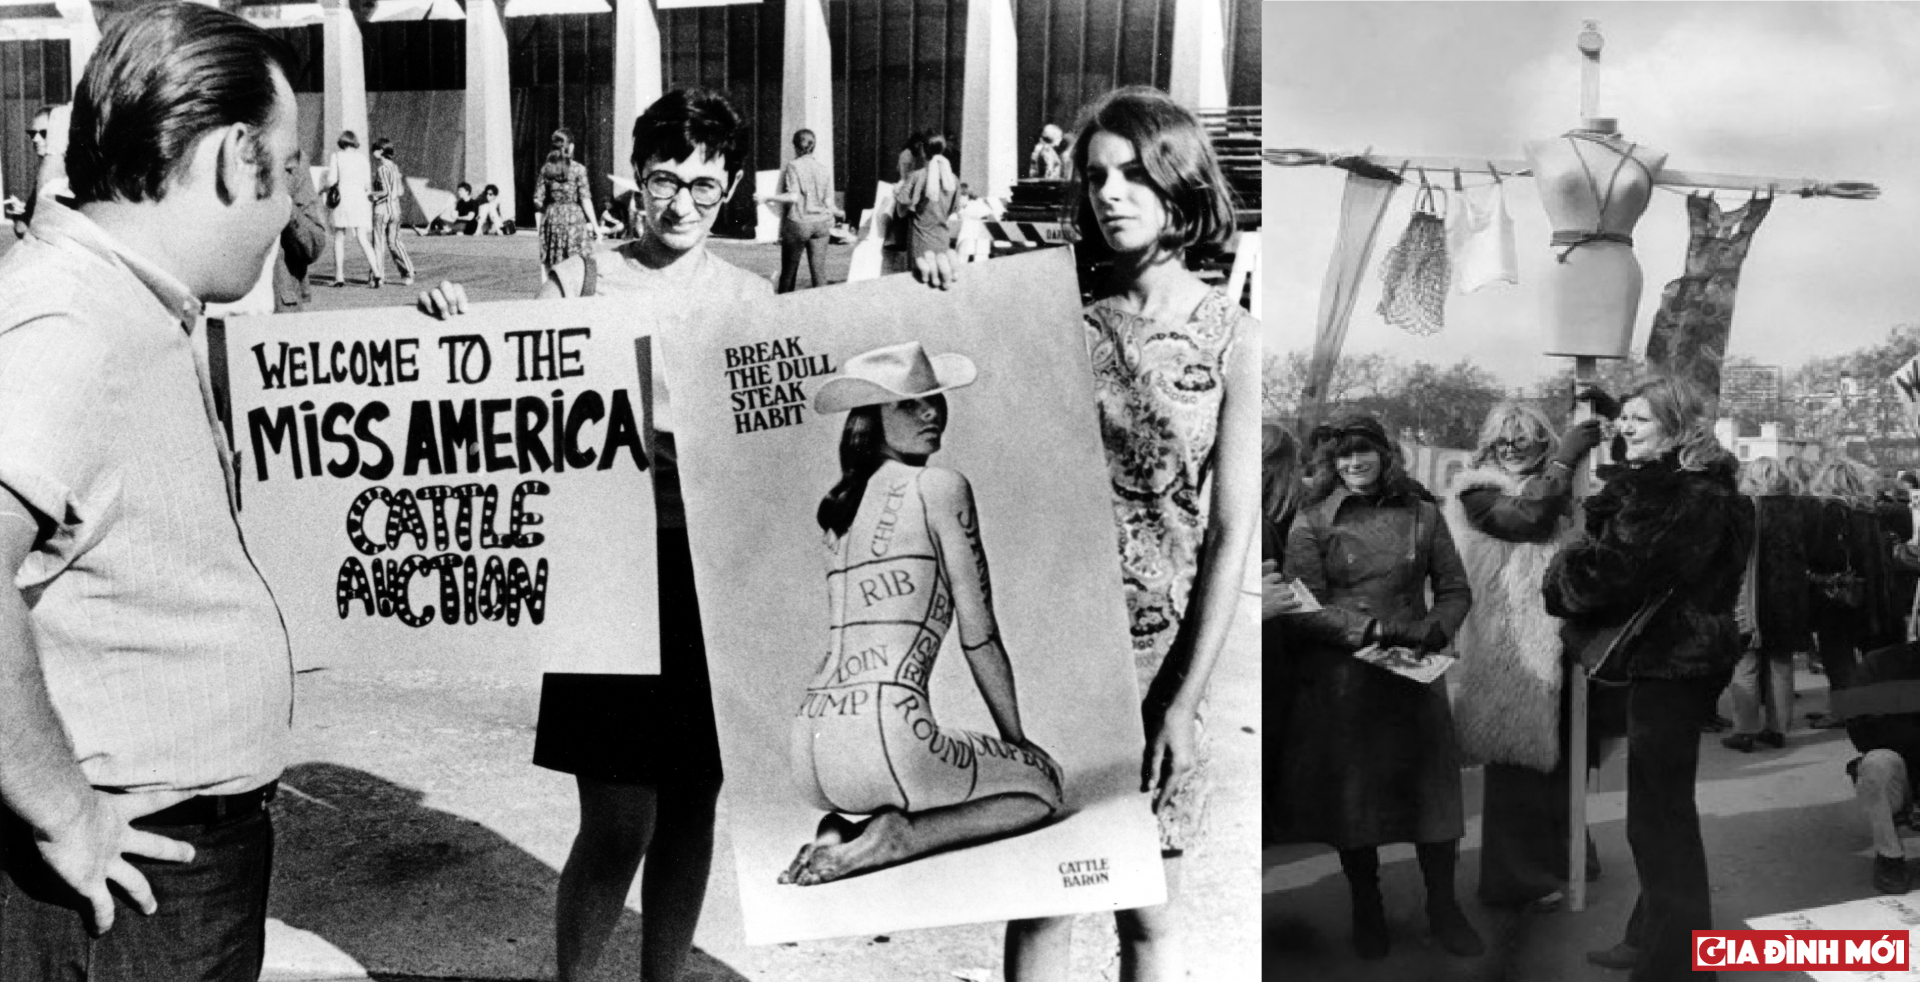   Hình ảnh phụ nữ Mỹ (trái) và phụ nữ Anh (phải) đấu tranh để chống lại các cuộc thi sắc đẹp    